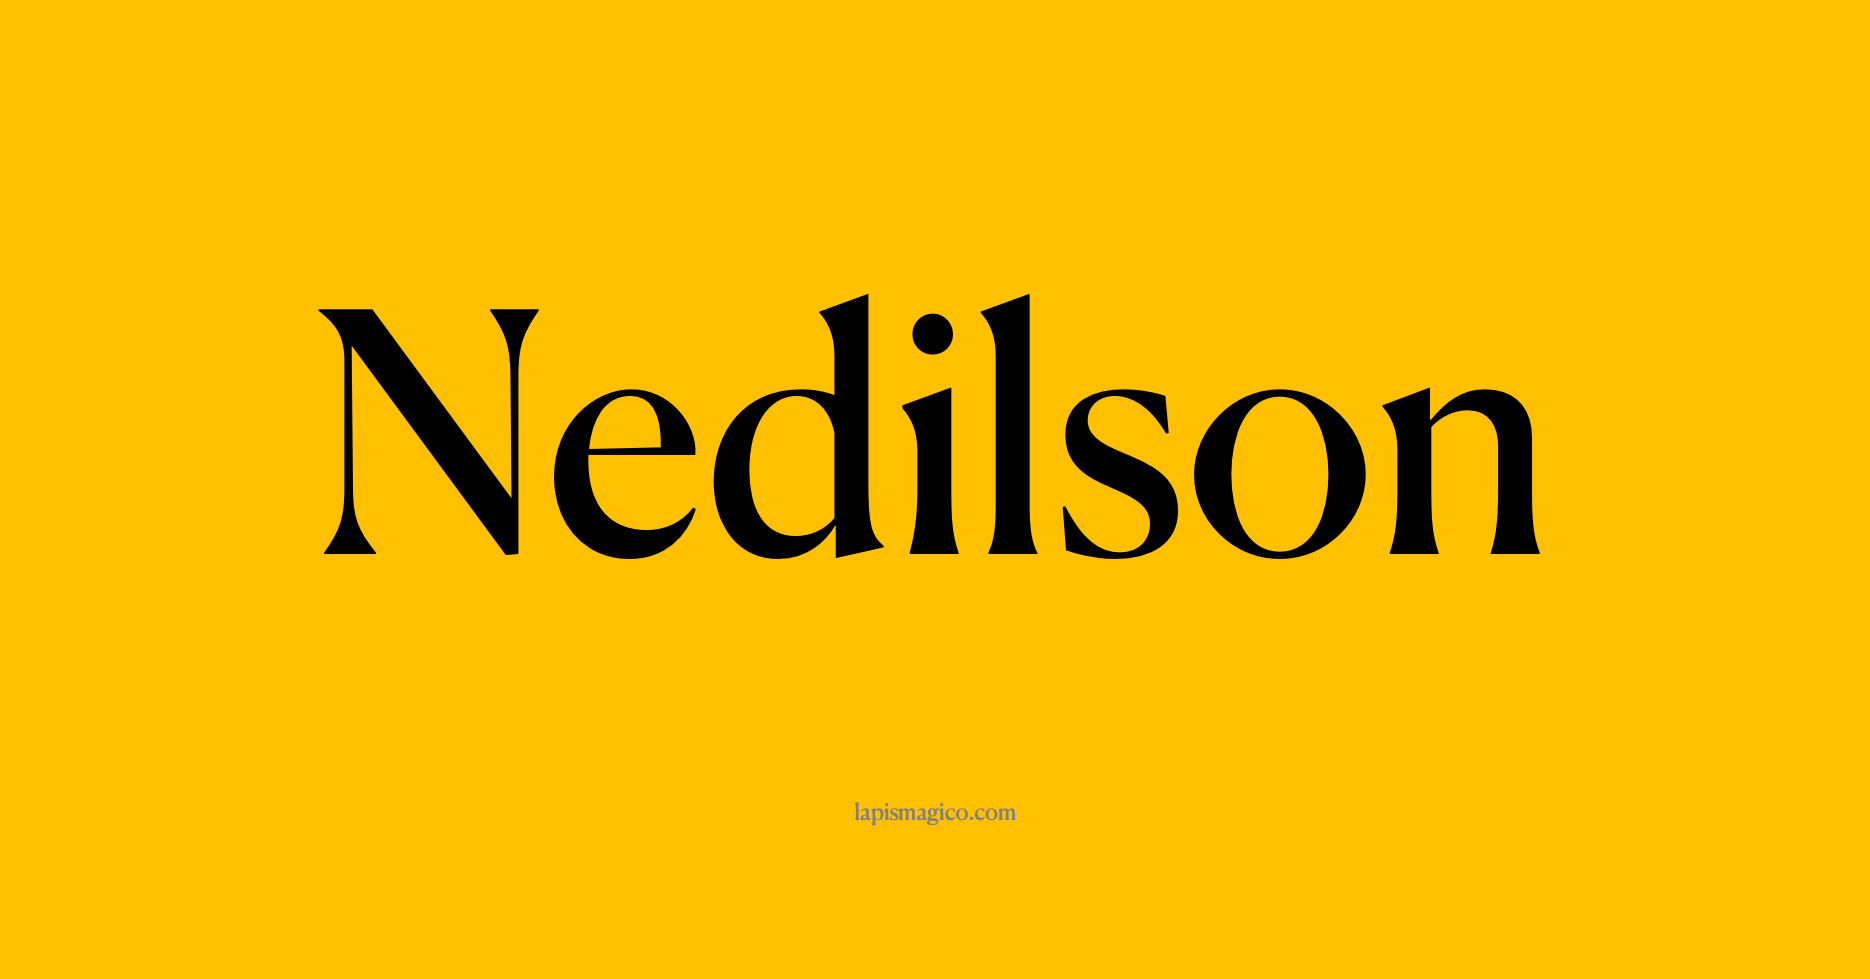 Nome Nedilson, ficha divertida com pontilhado para crianças